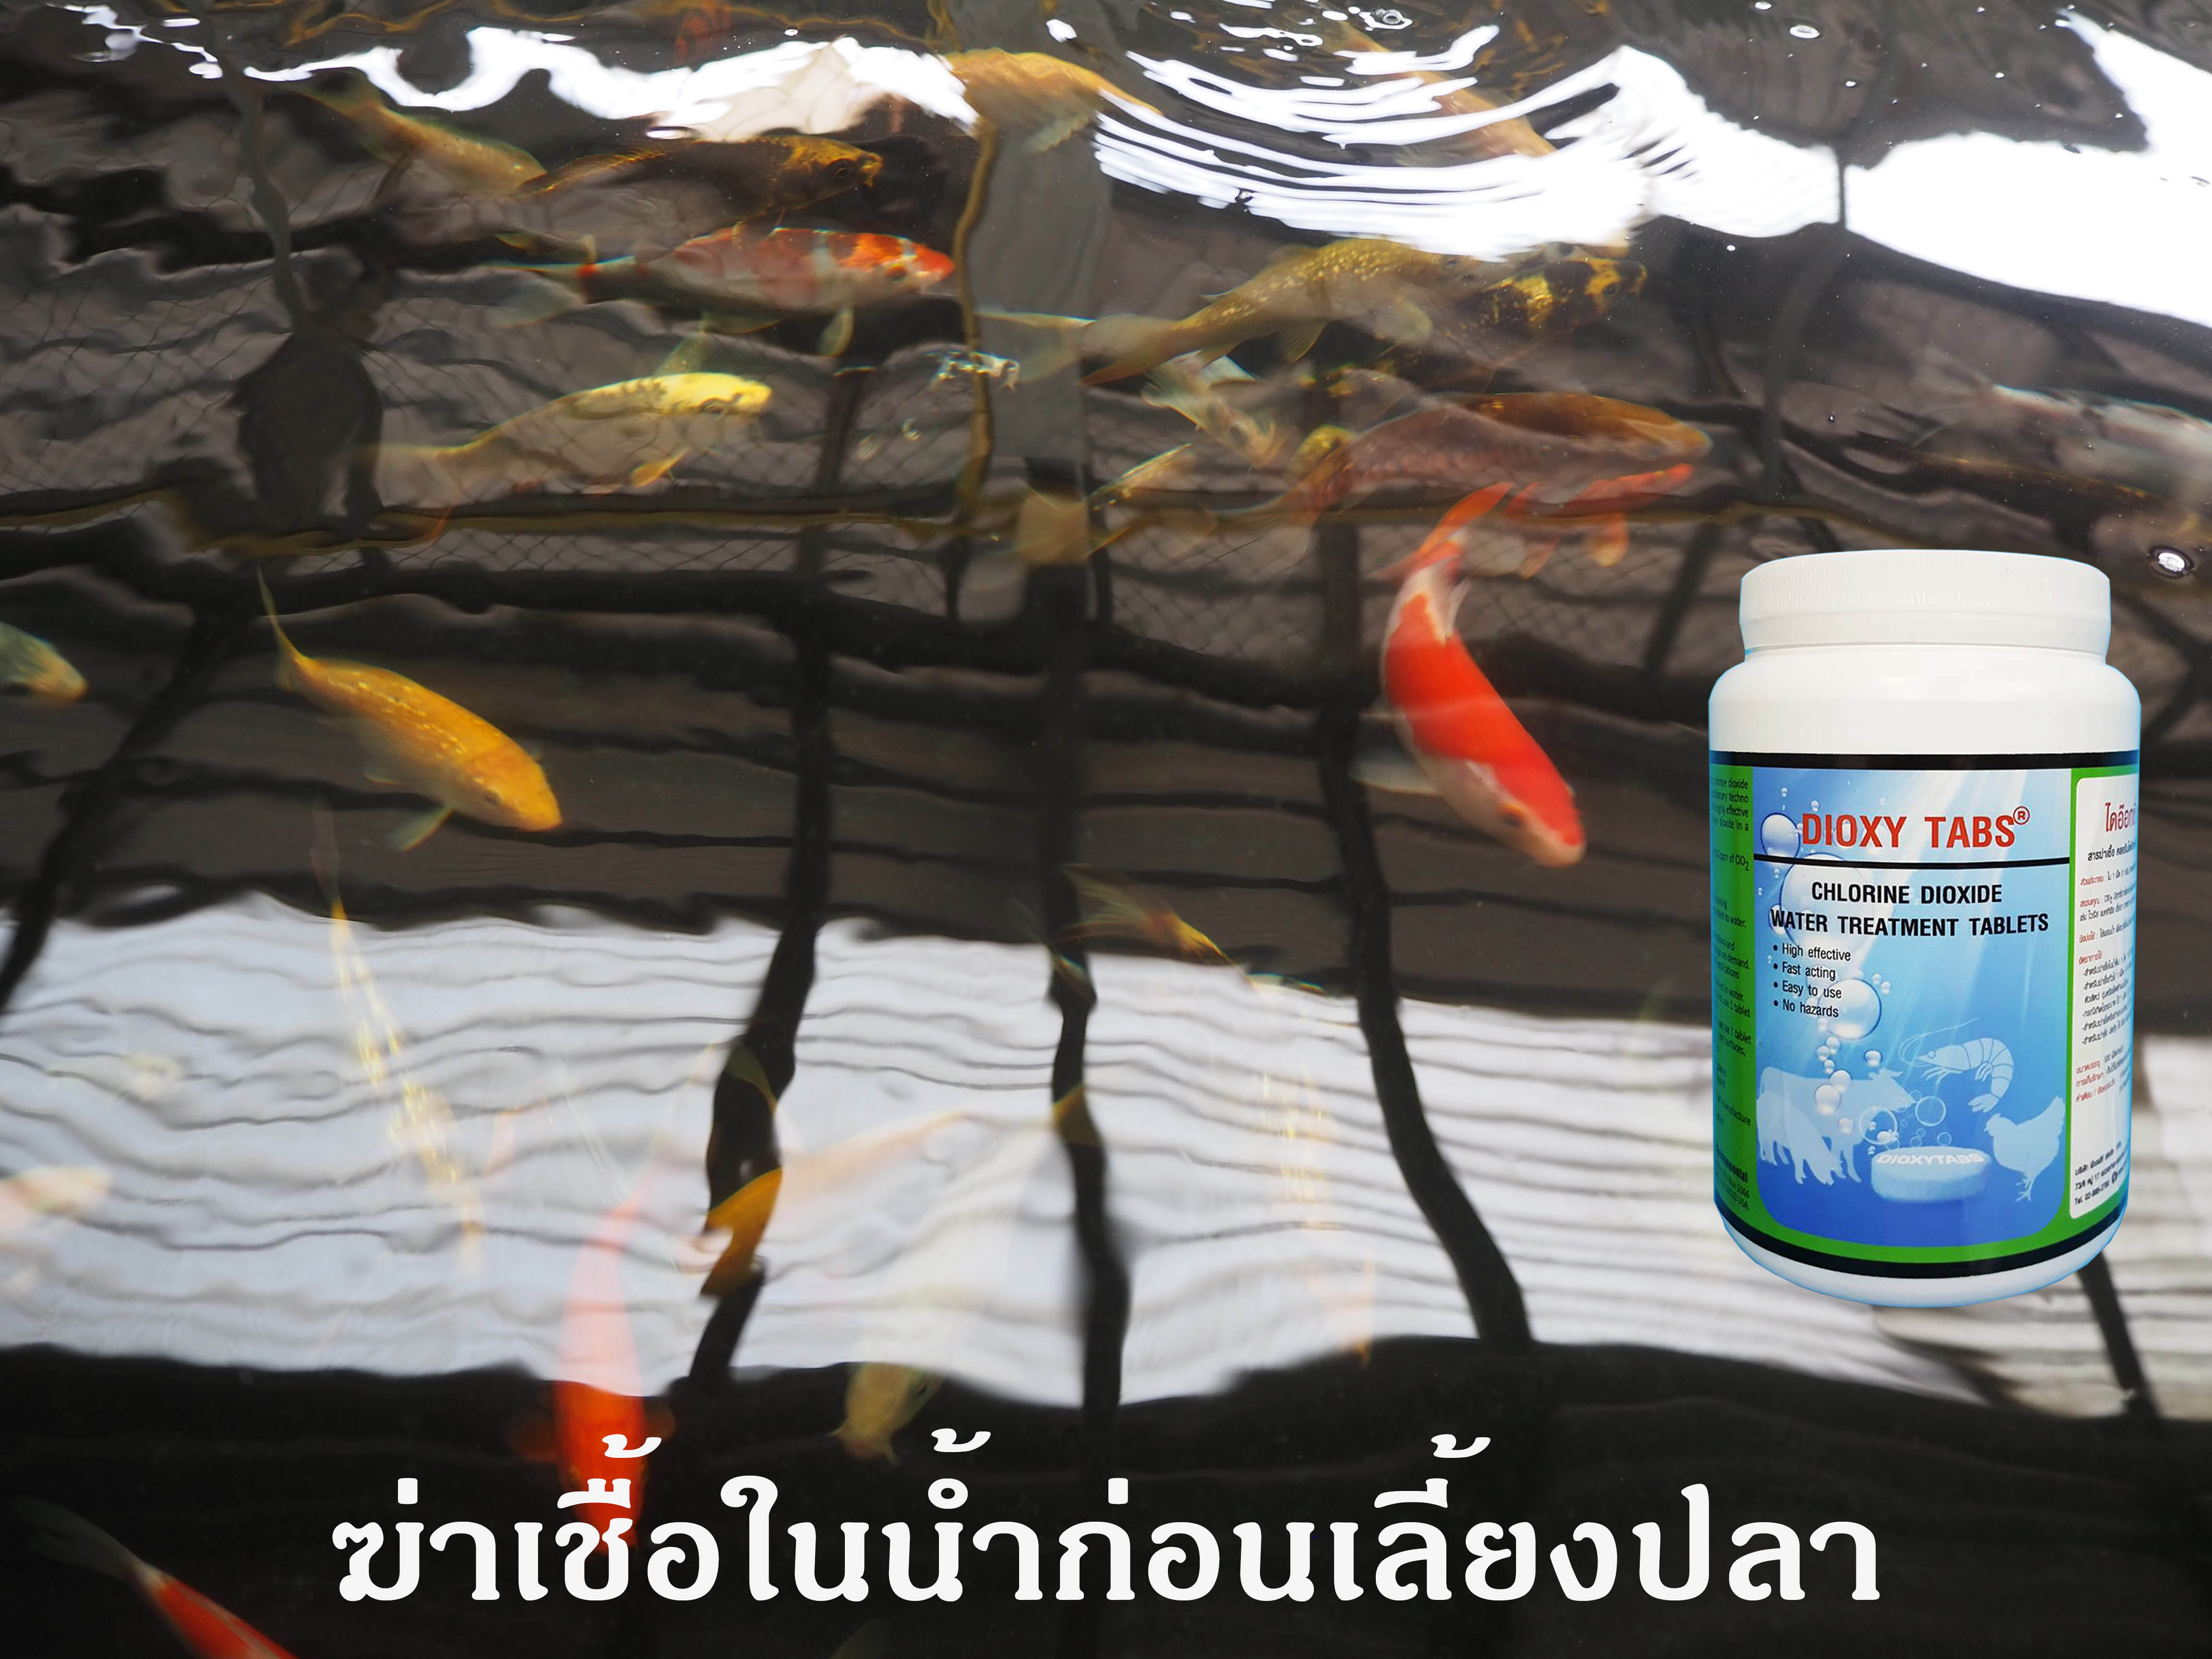 ใช้คลอรีนไดออกไซด์ฆ่าเชื้อโรคในน้ำก่อนเลี้ยงปลา